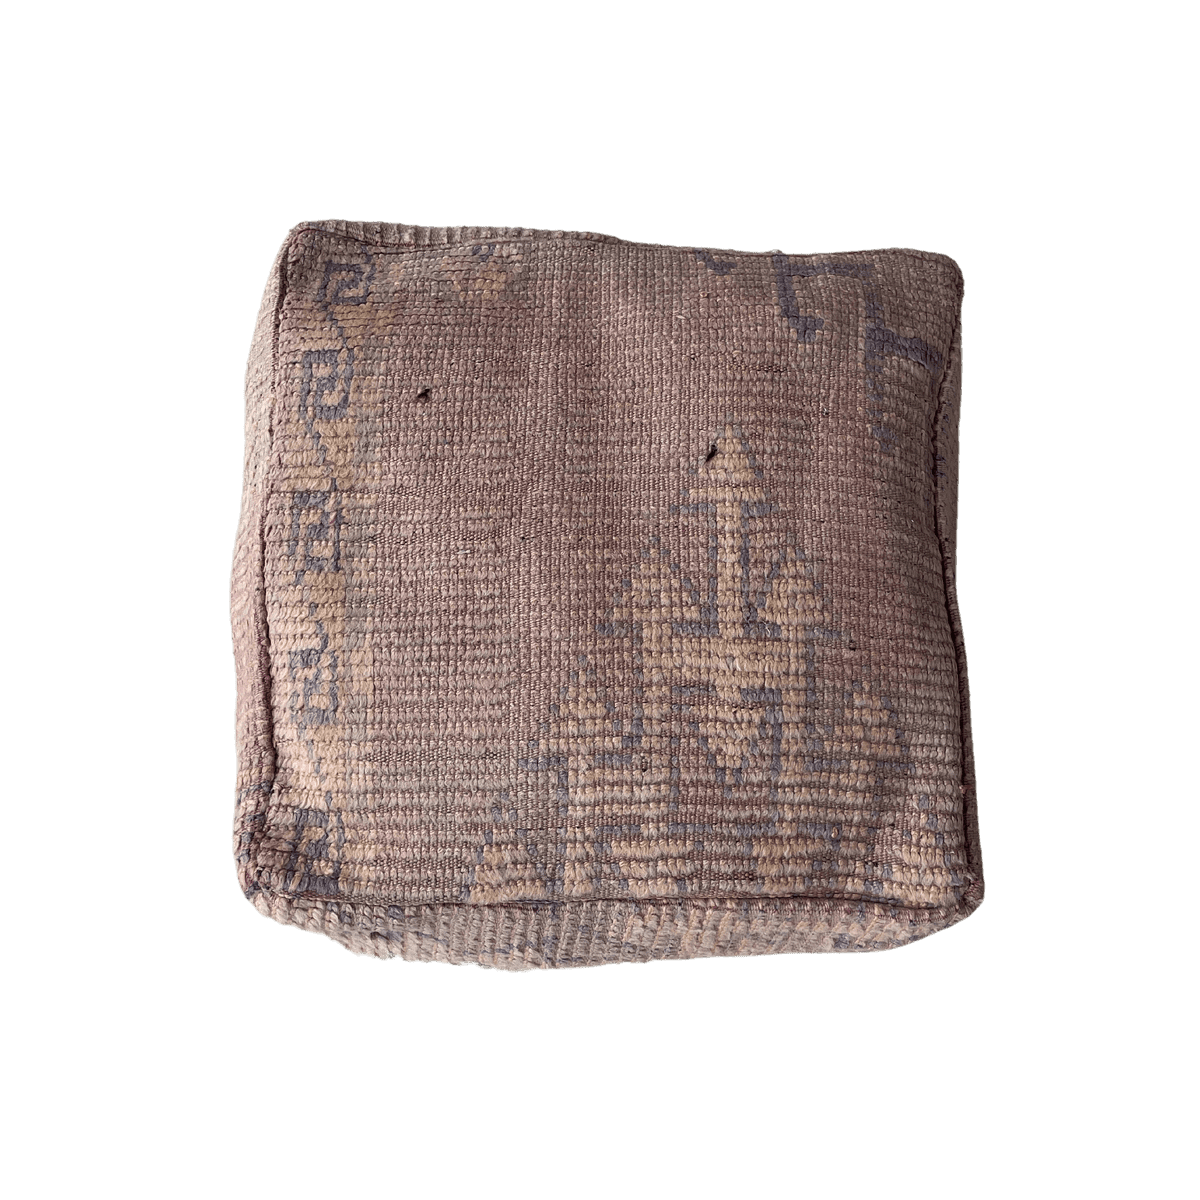 Vintage pouf - Beni Mguild - size 60x60x20 cm.